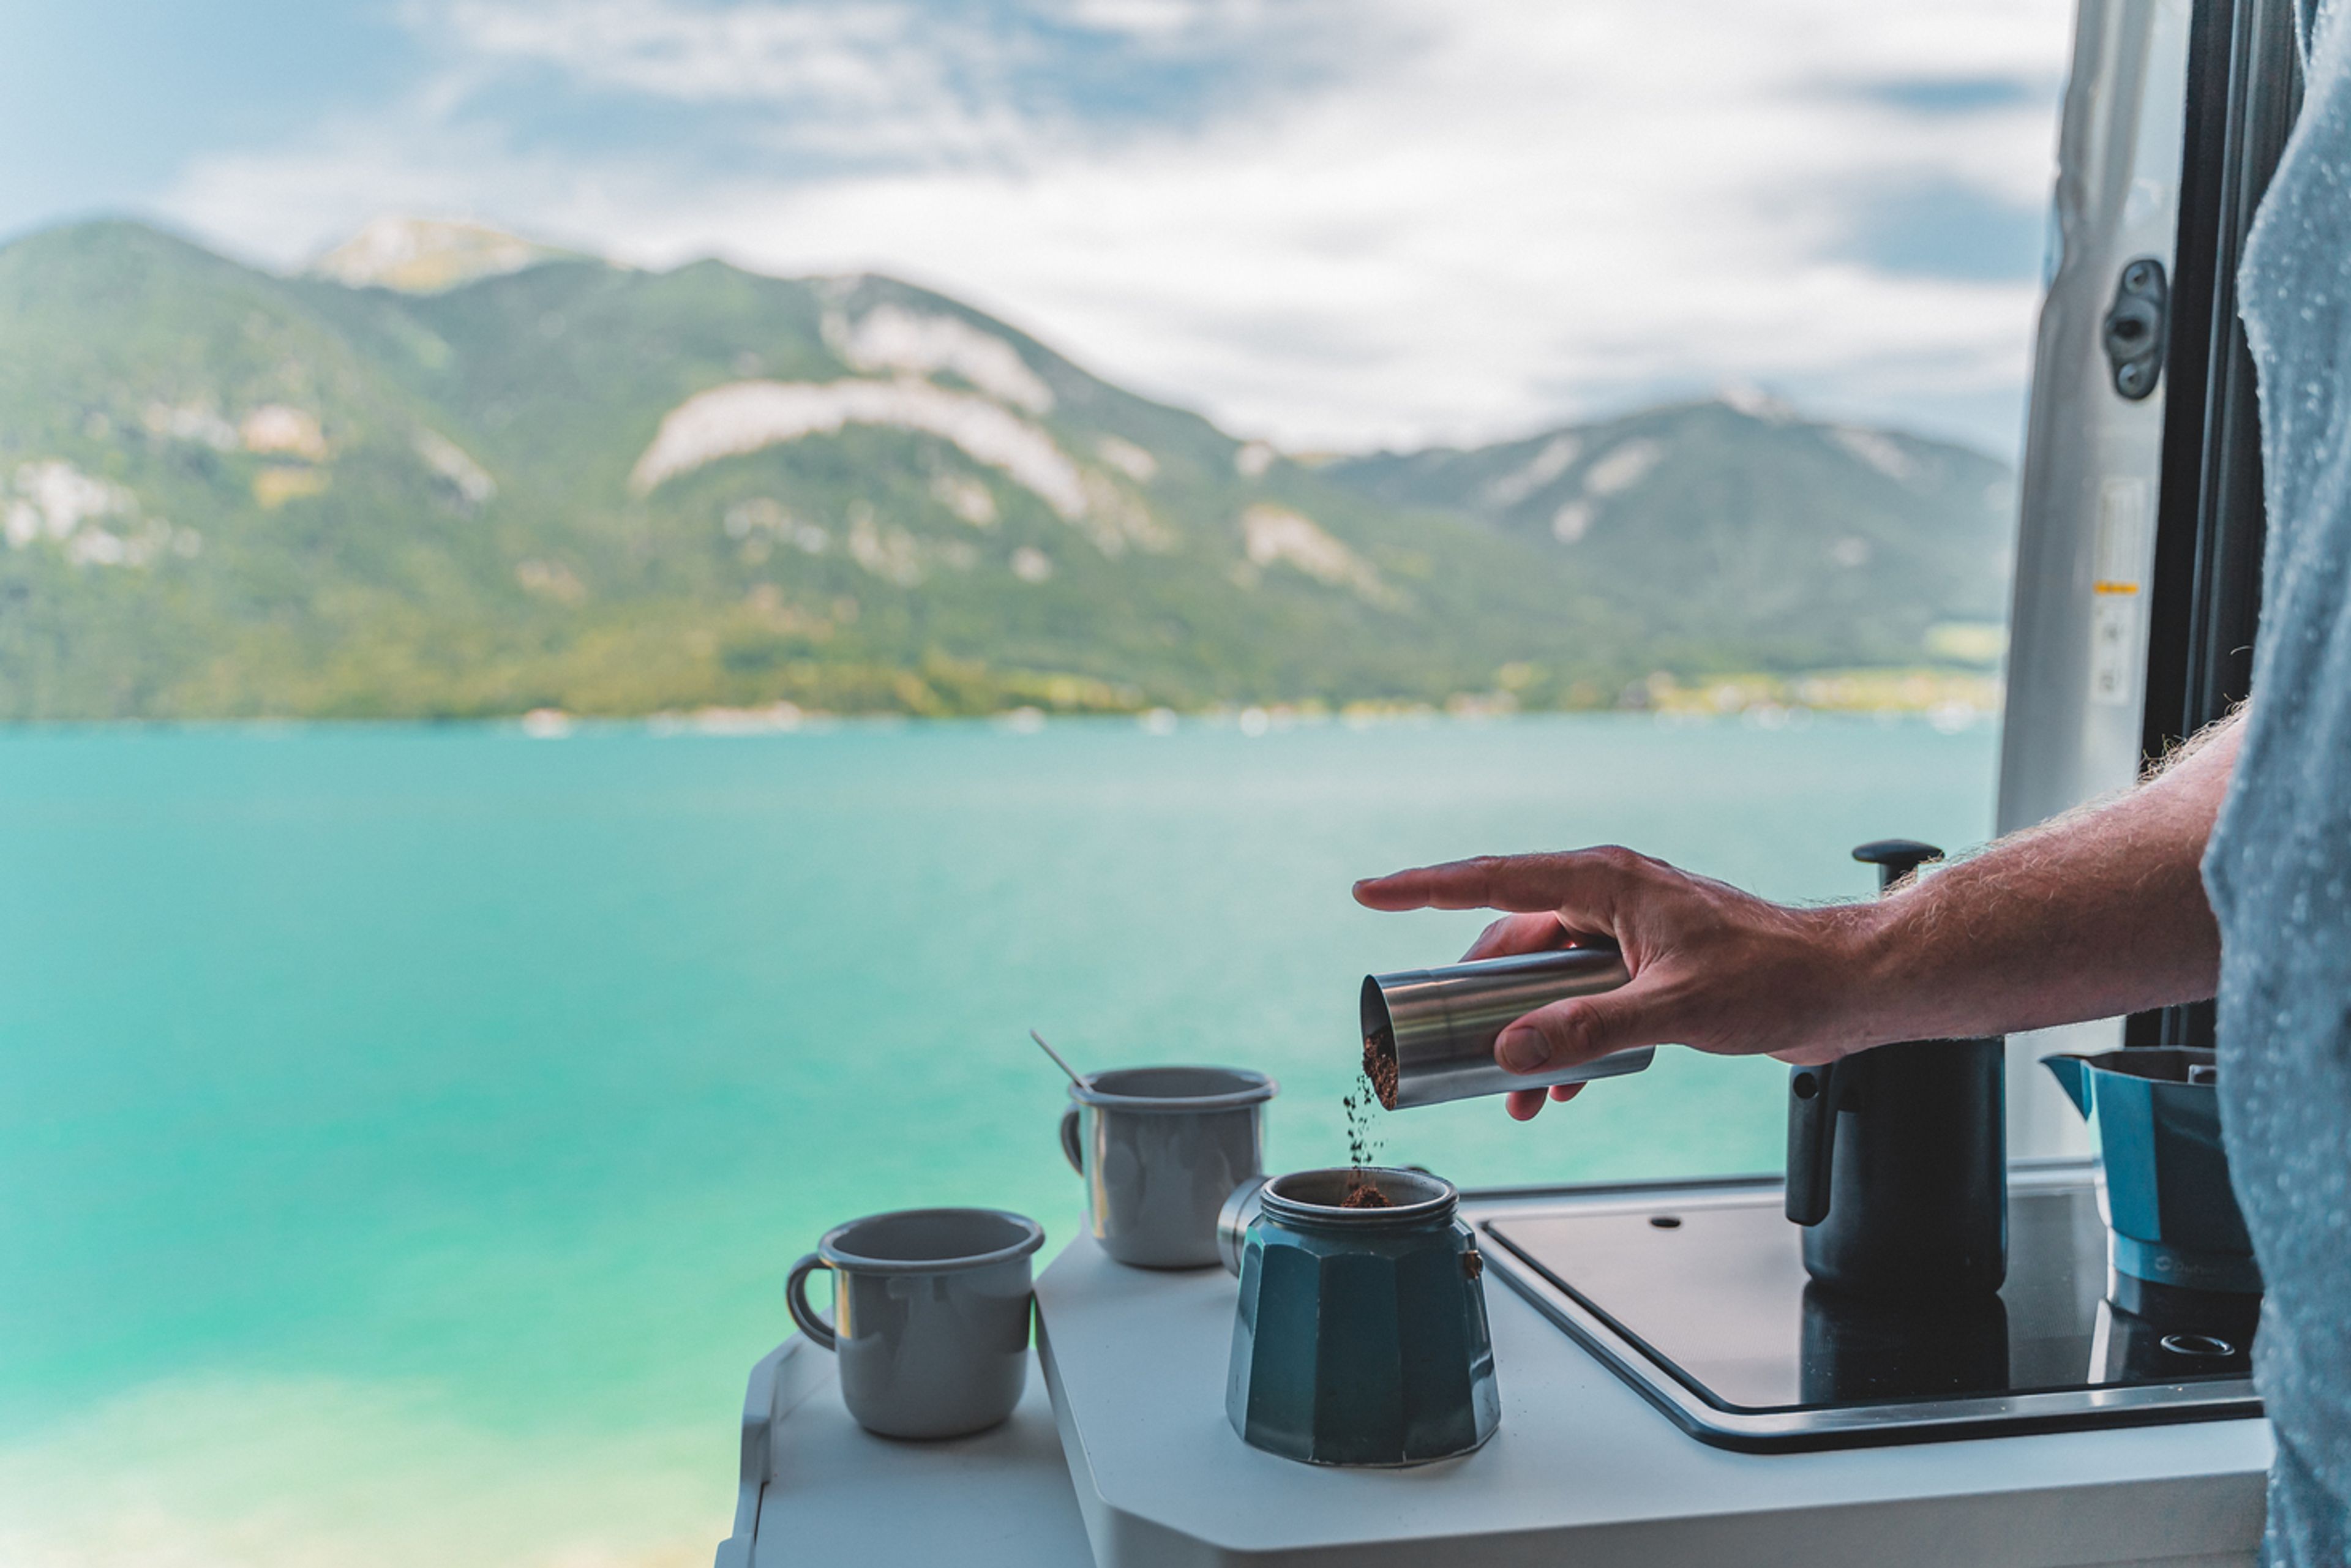 Kaffeekochen mit einer Moka-Kanne in einem Wohnmobil mit Blick auf einen See und eine schöne Bergkette